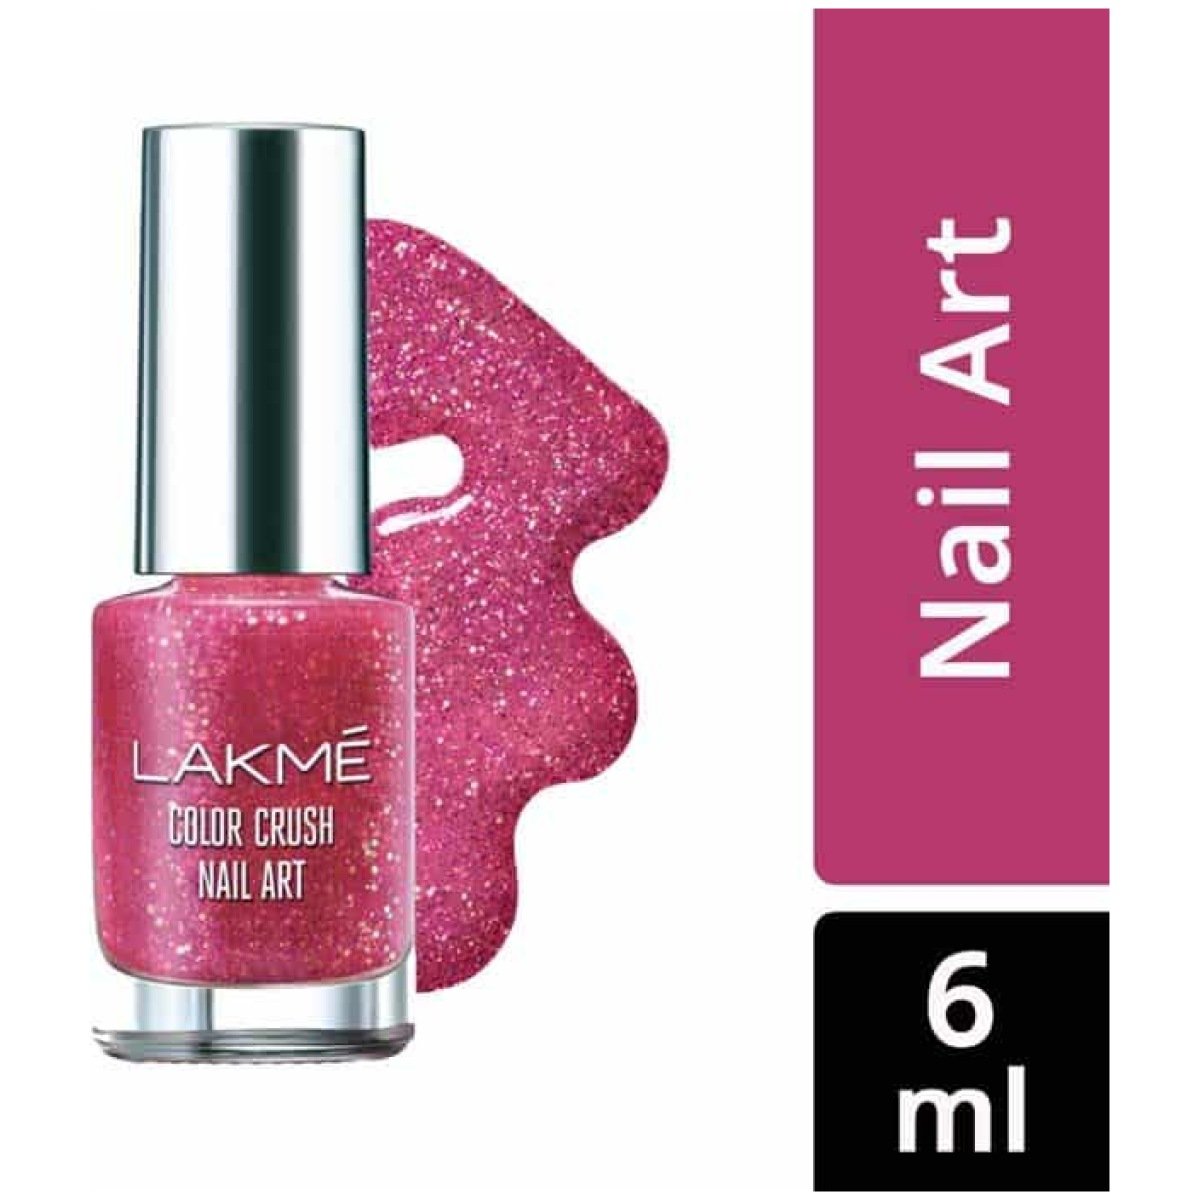 Lakme Color Crush Nail Art 6ml - Shade P1 | eBay